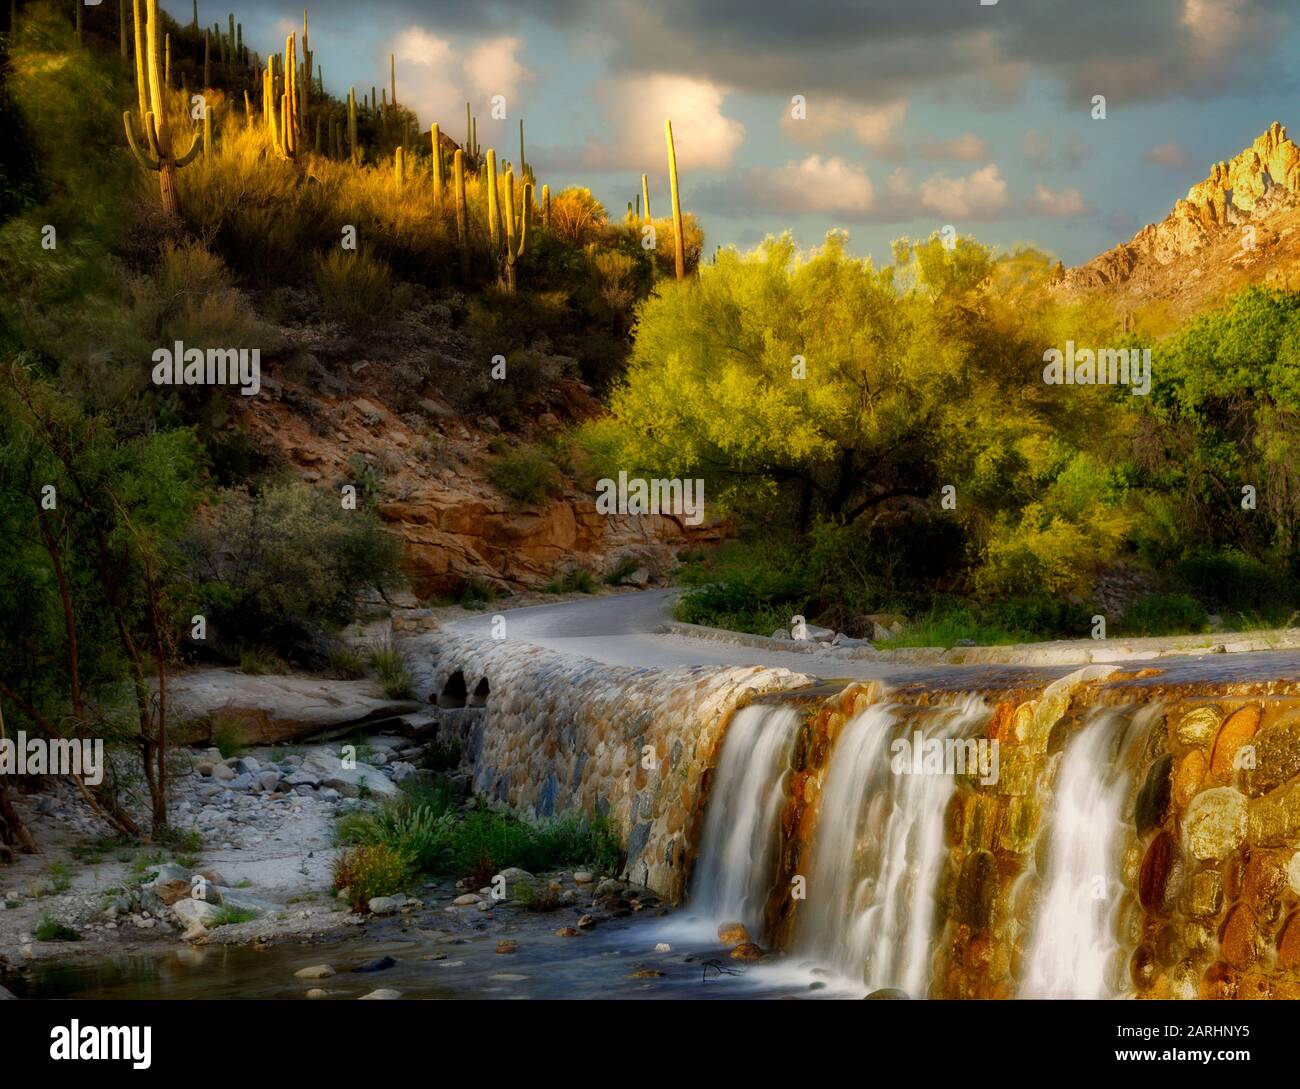 Route dans le canyon Sabino avec arbre Palo Verde en fleurs et cascade. Arizona Banque D'Images